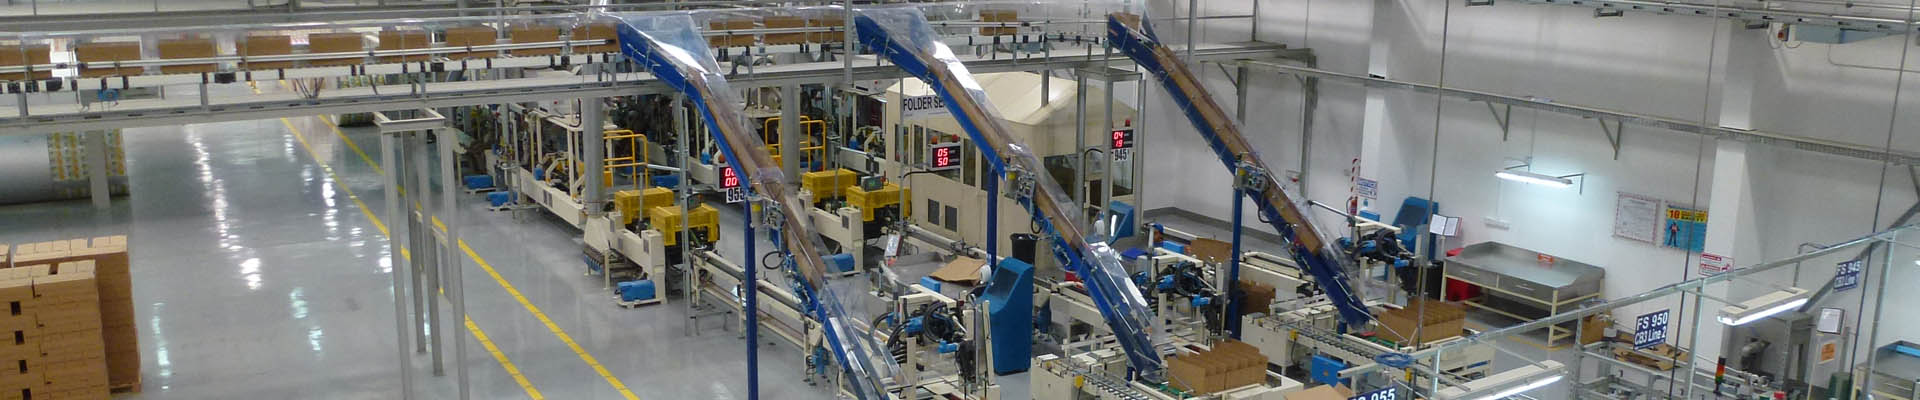 Systemlösungen für Produktionslogistik: Produktionsautomation